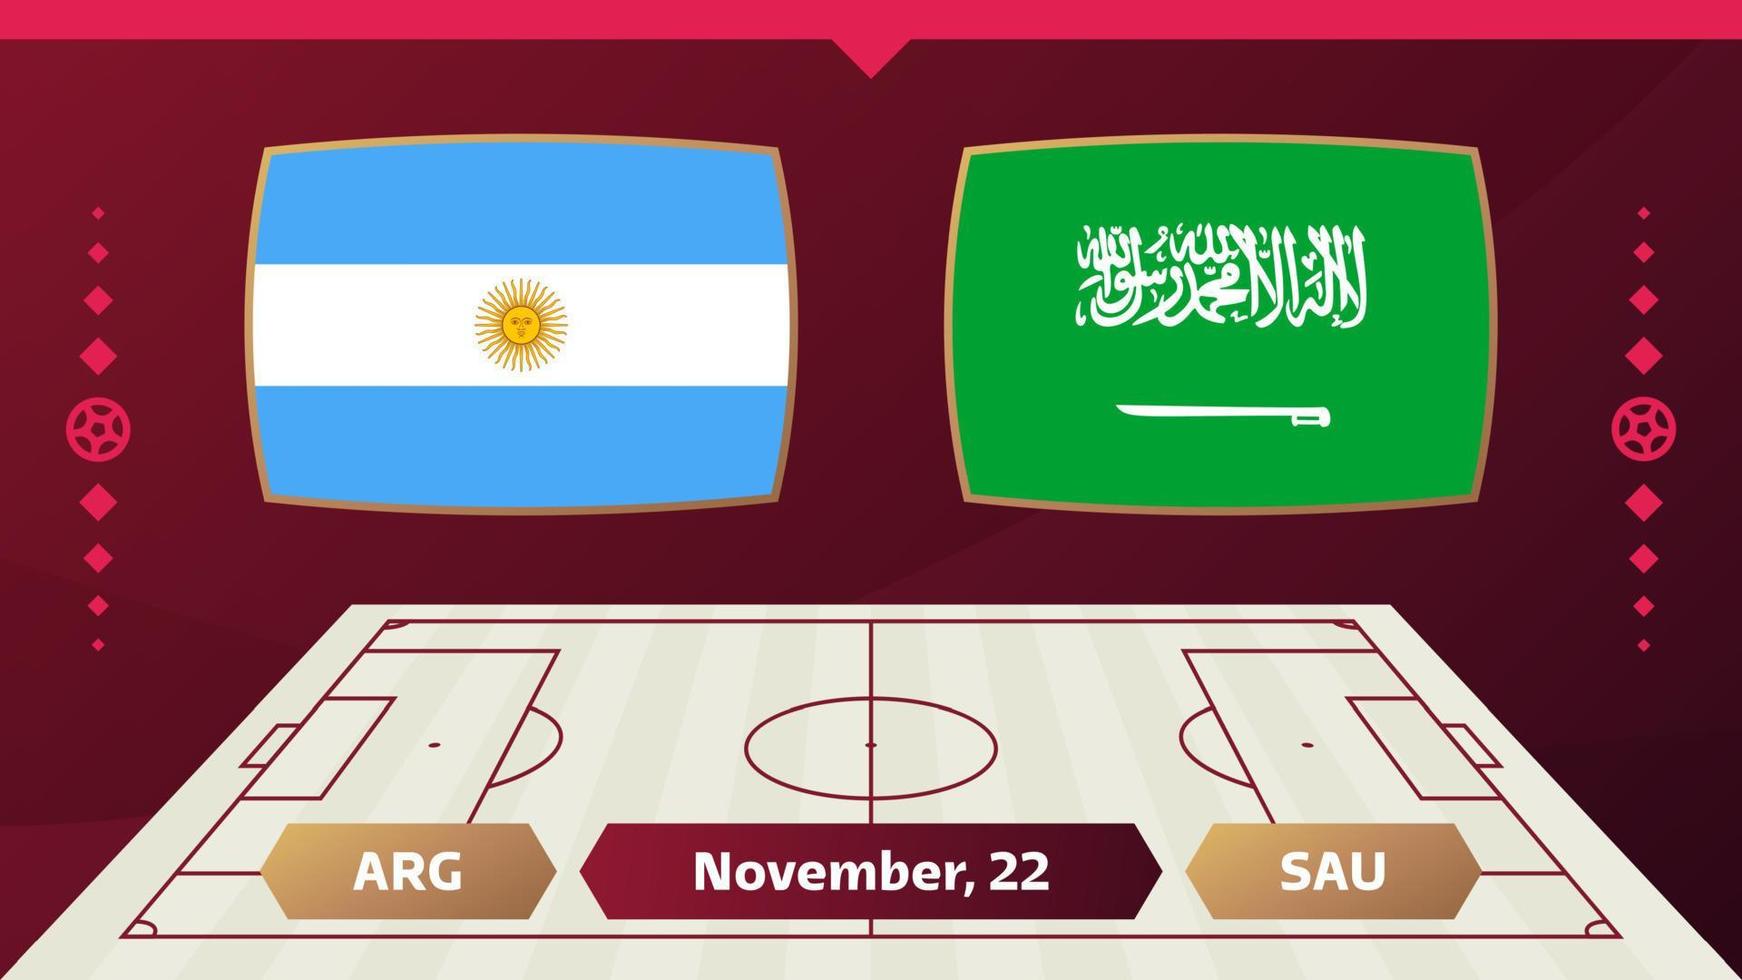 argentina vs arabia saudita, calcio 2022, gruppo c. partita di campionato mondiale di calcio contro squadre intro sfondo sportivo, poster finale della competizione di campionato, illustrazione vettoriale. vettore